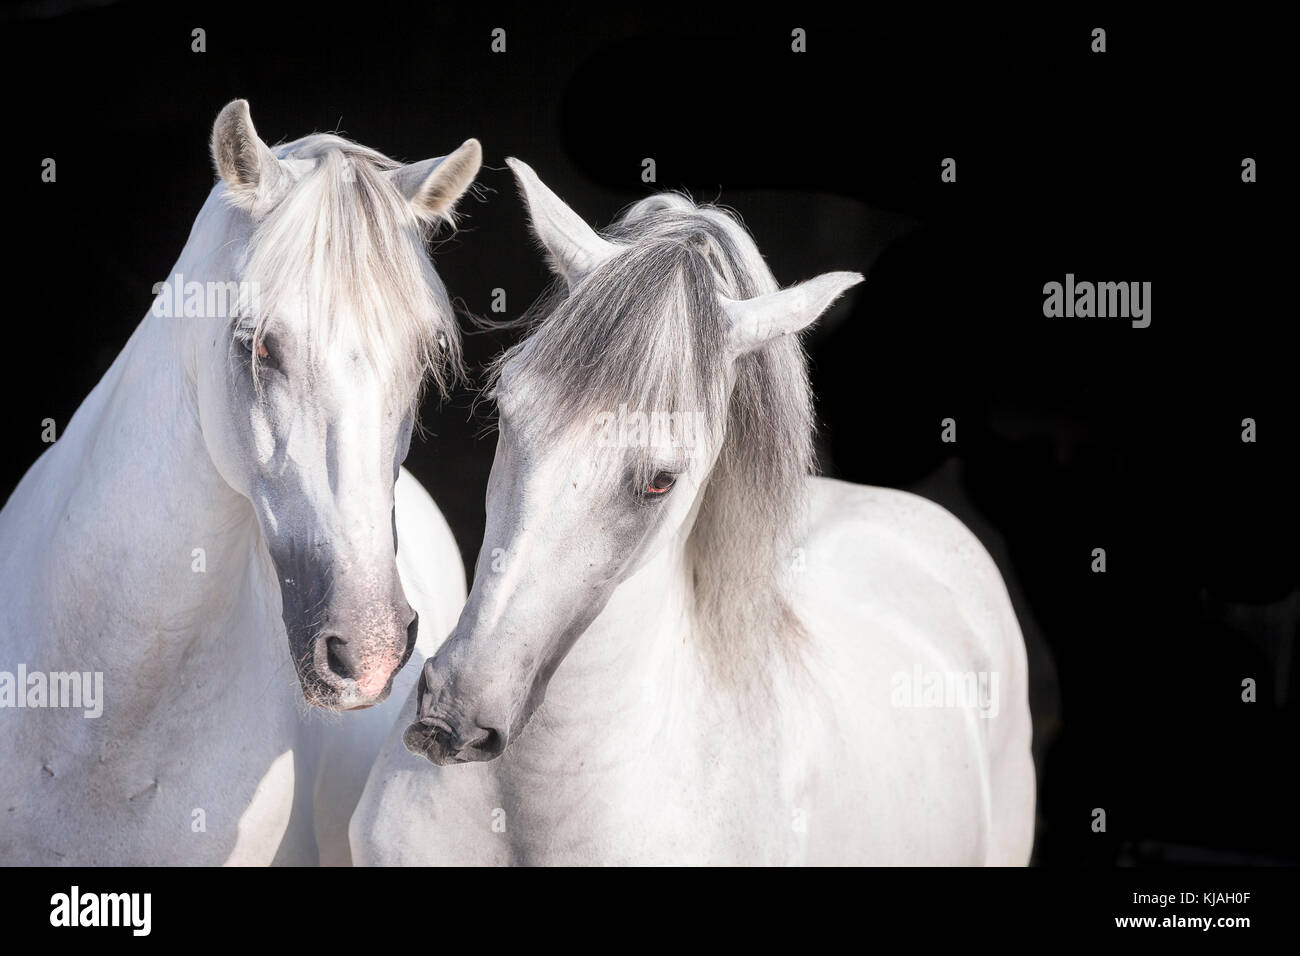 Reine Spanische Pferd, Andalusische. Porträt von zwei graue Hengste, vor einem schwarzen Hintergrund gesehen. Deutschland Stockfoto